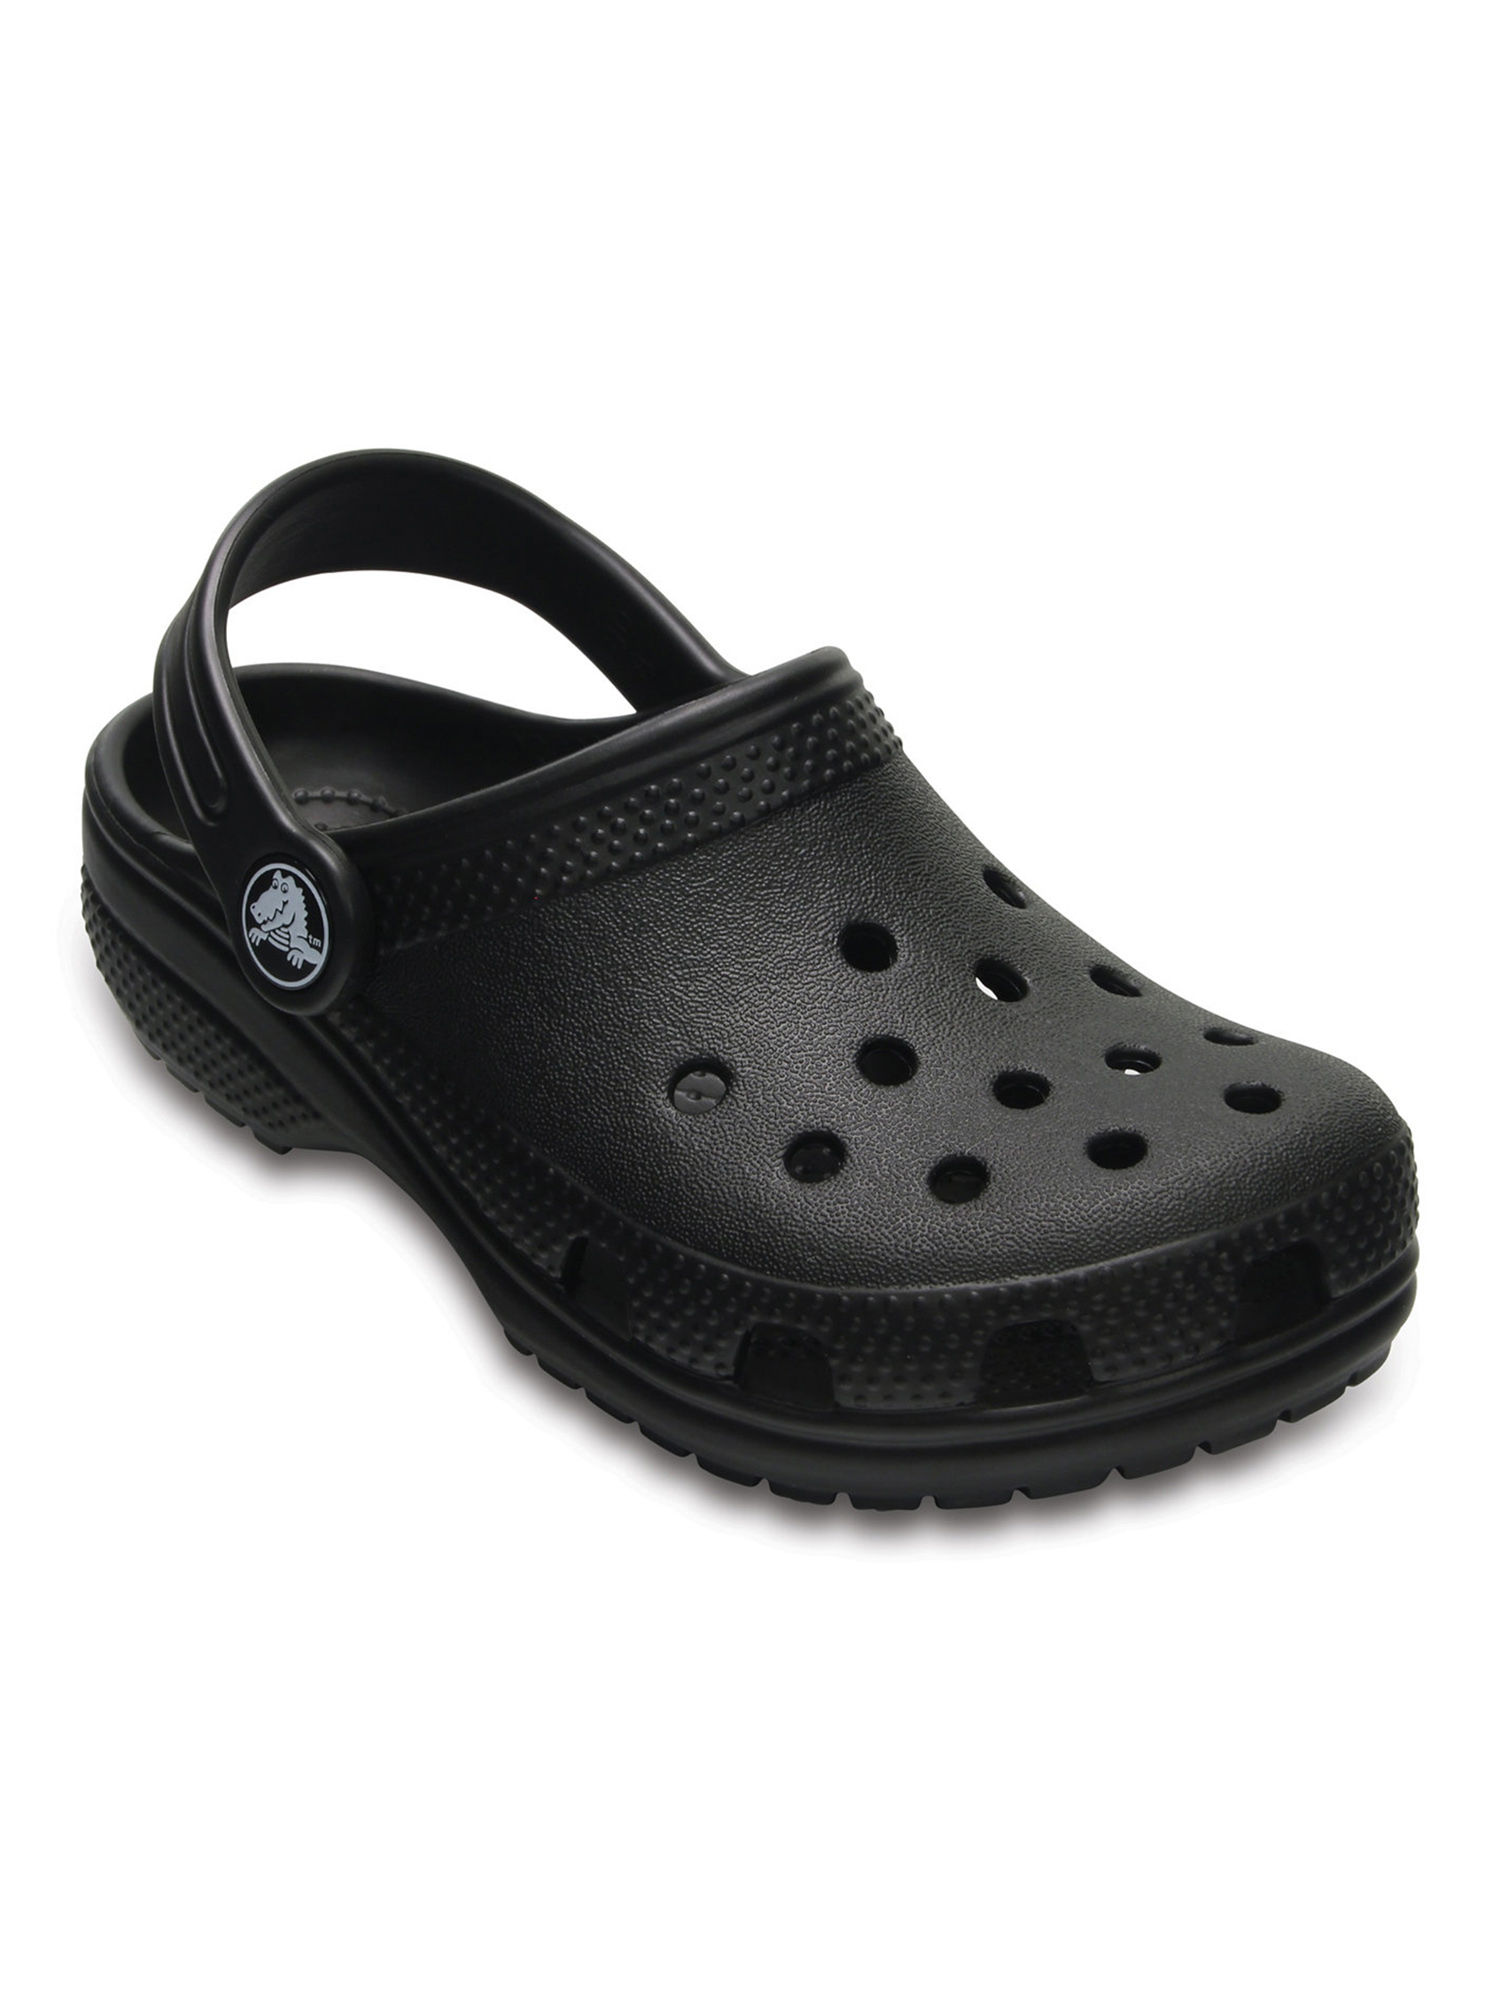 buy crocs clogs